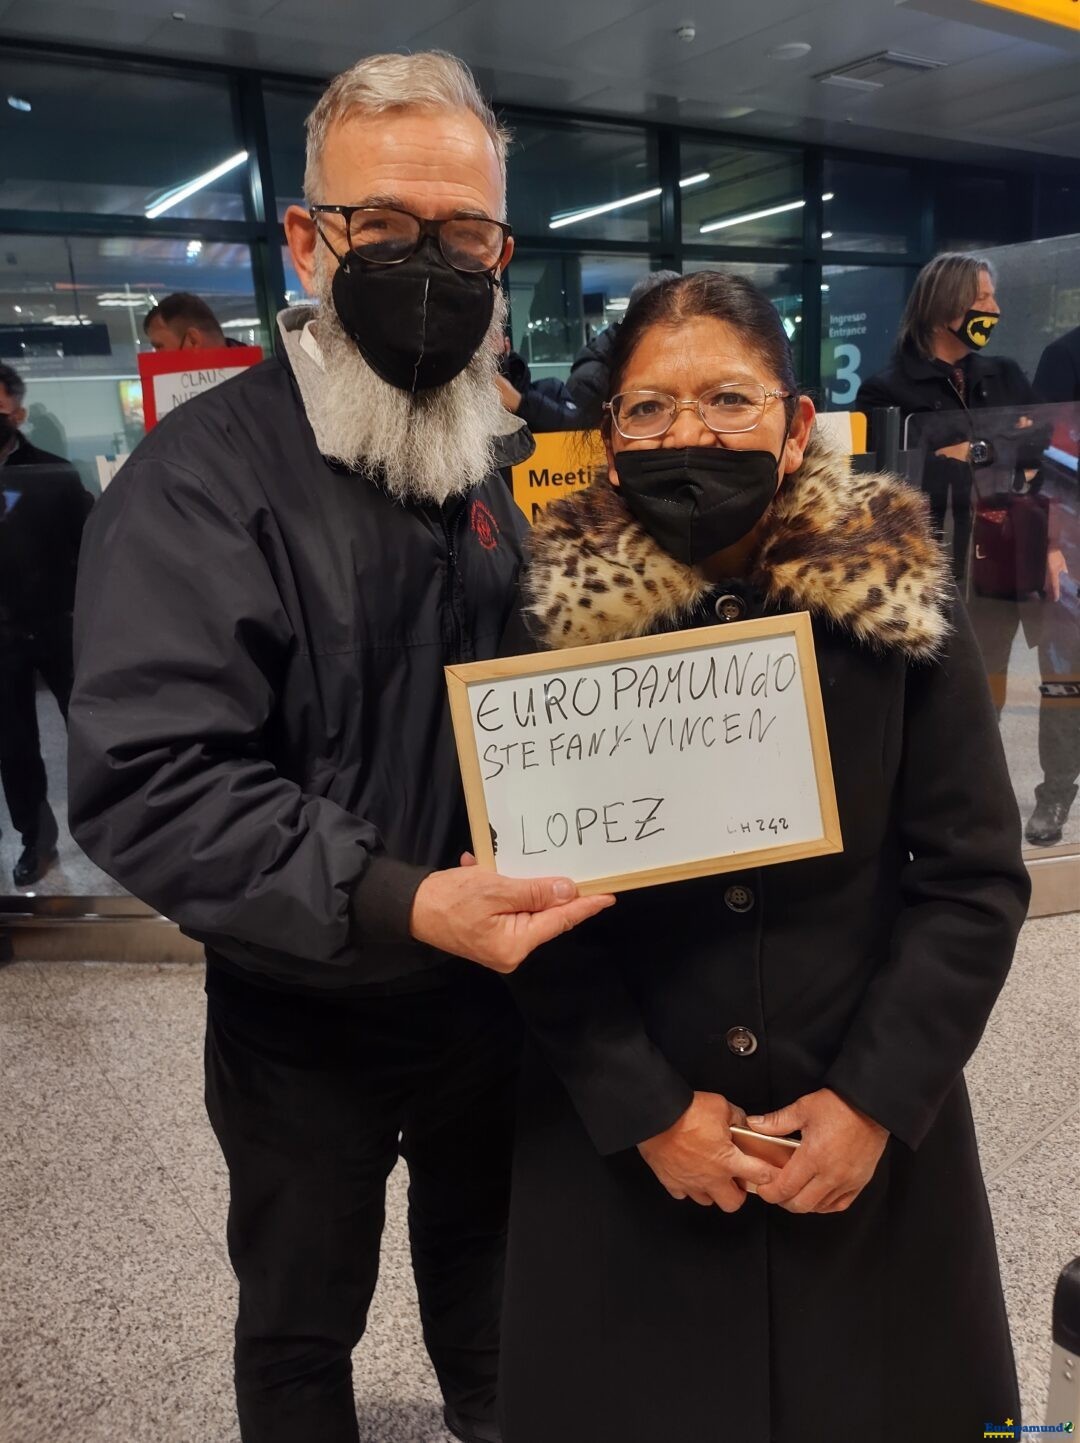 Europamundo recibiéndonos en el aeropuerto de Roma